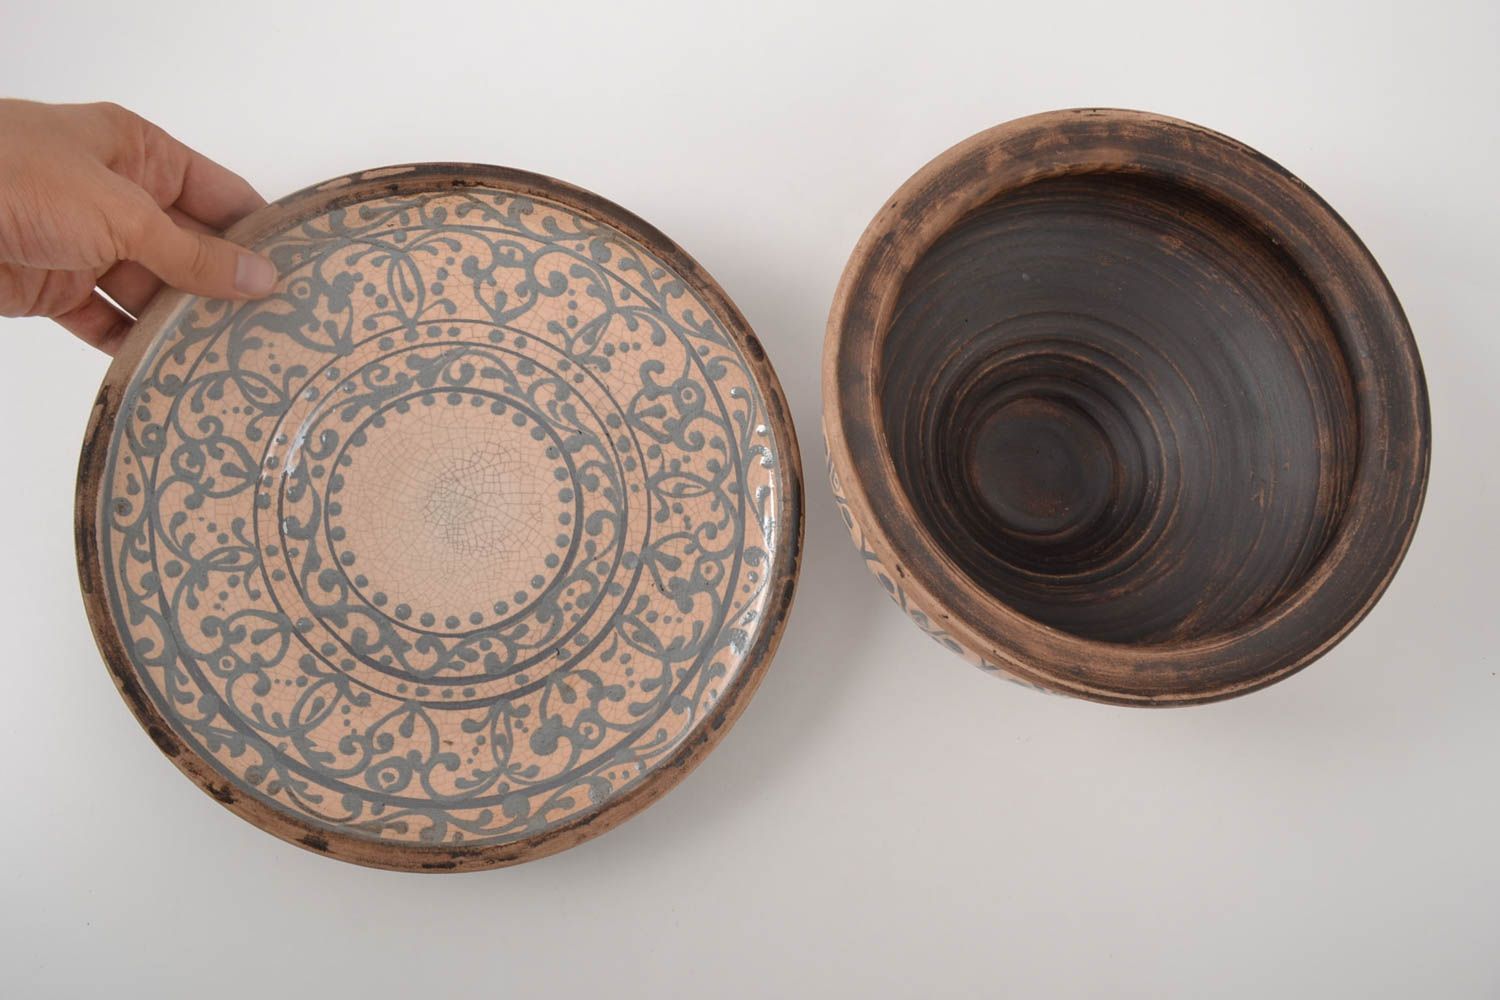 Глиняный горшок посуда ручной работы посуда из глины горшок и тарелка с узорами фото 2